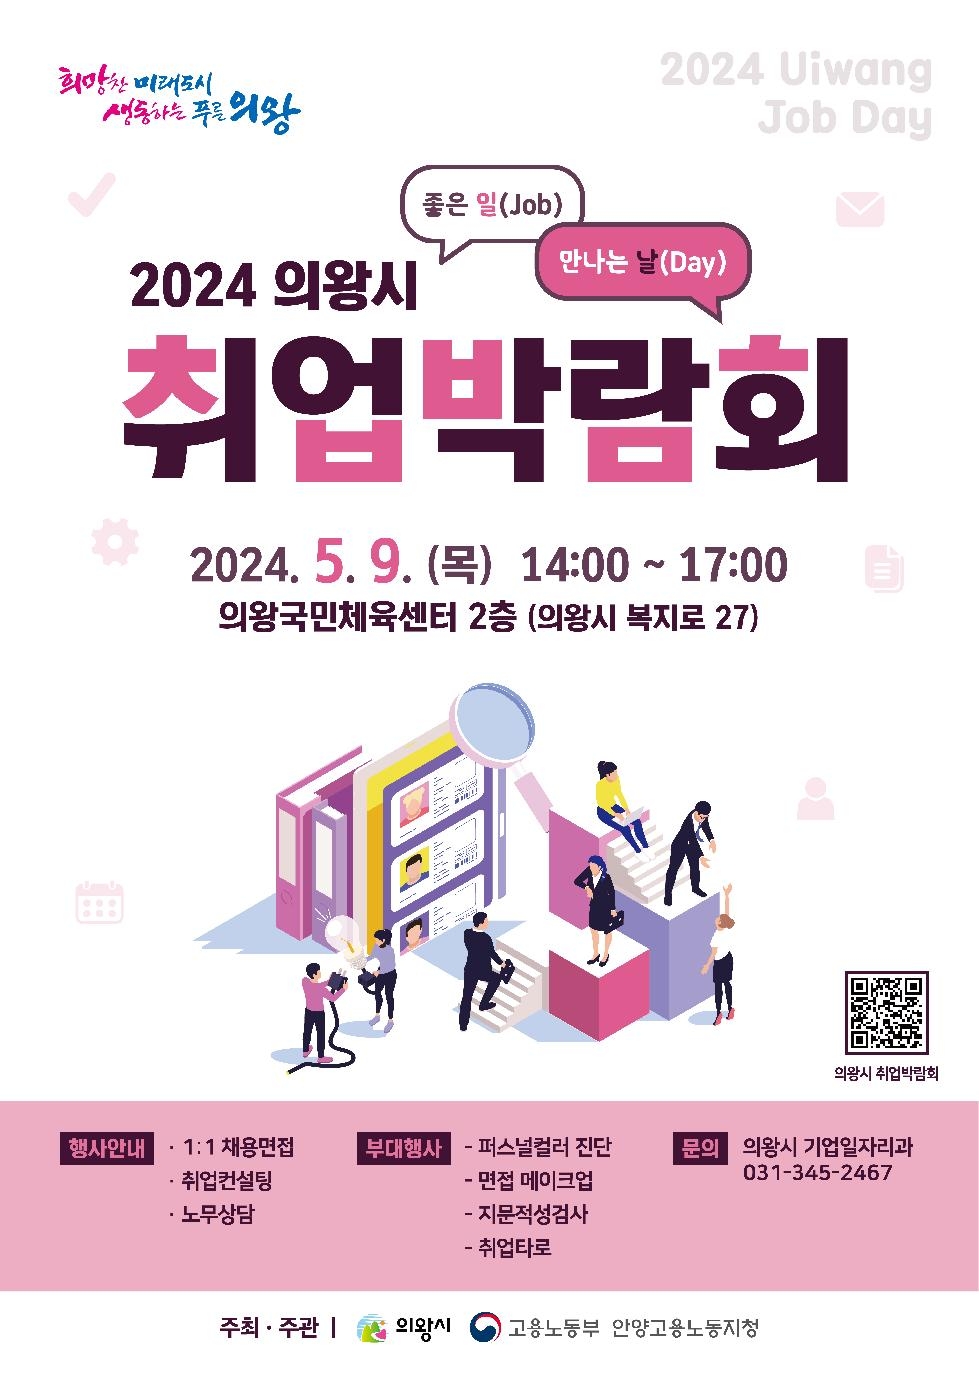 의왕시  2024년 취업박람회 5월 9일 개최